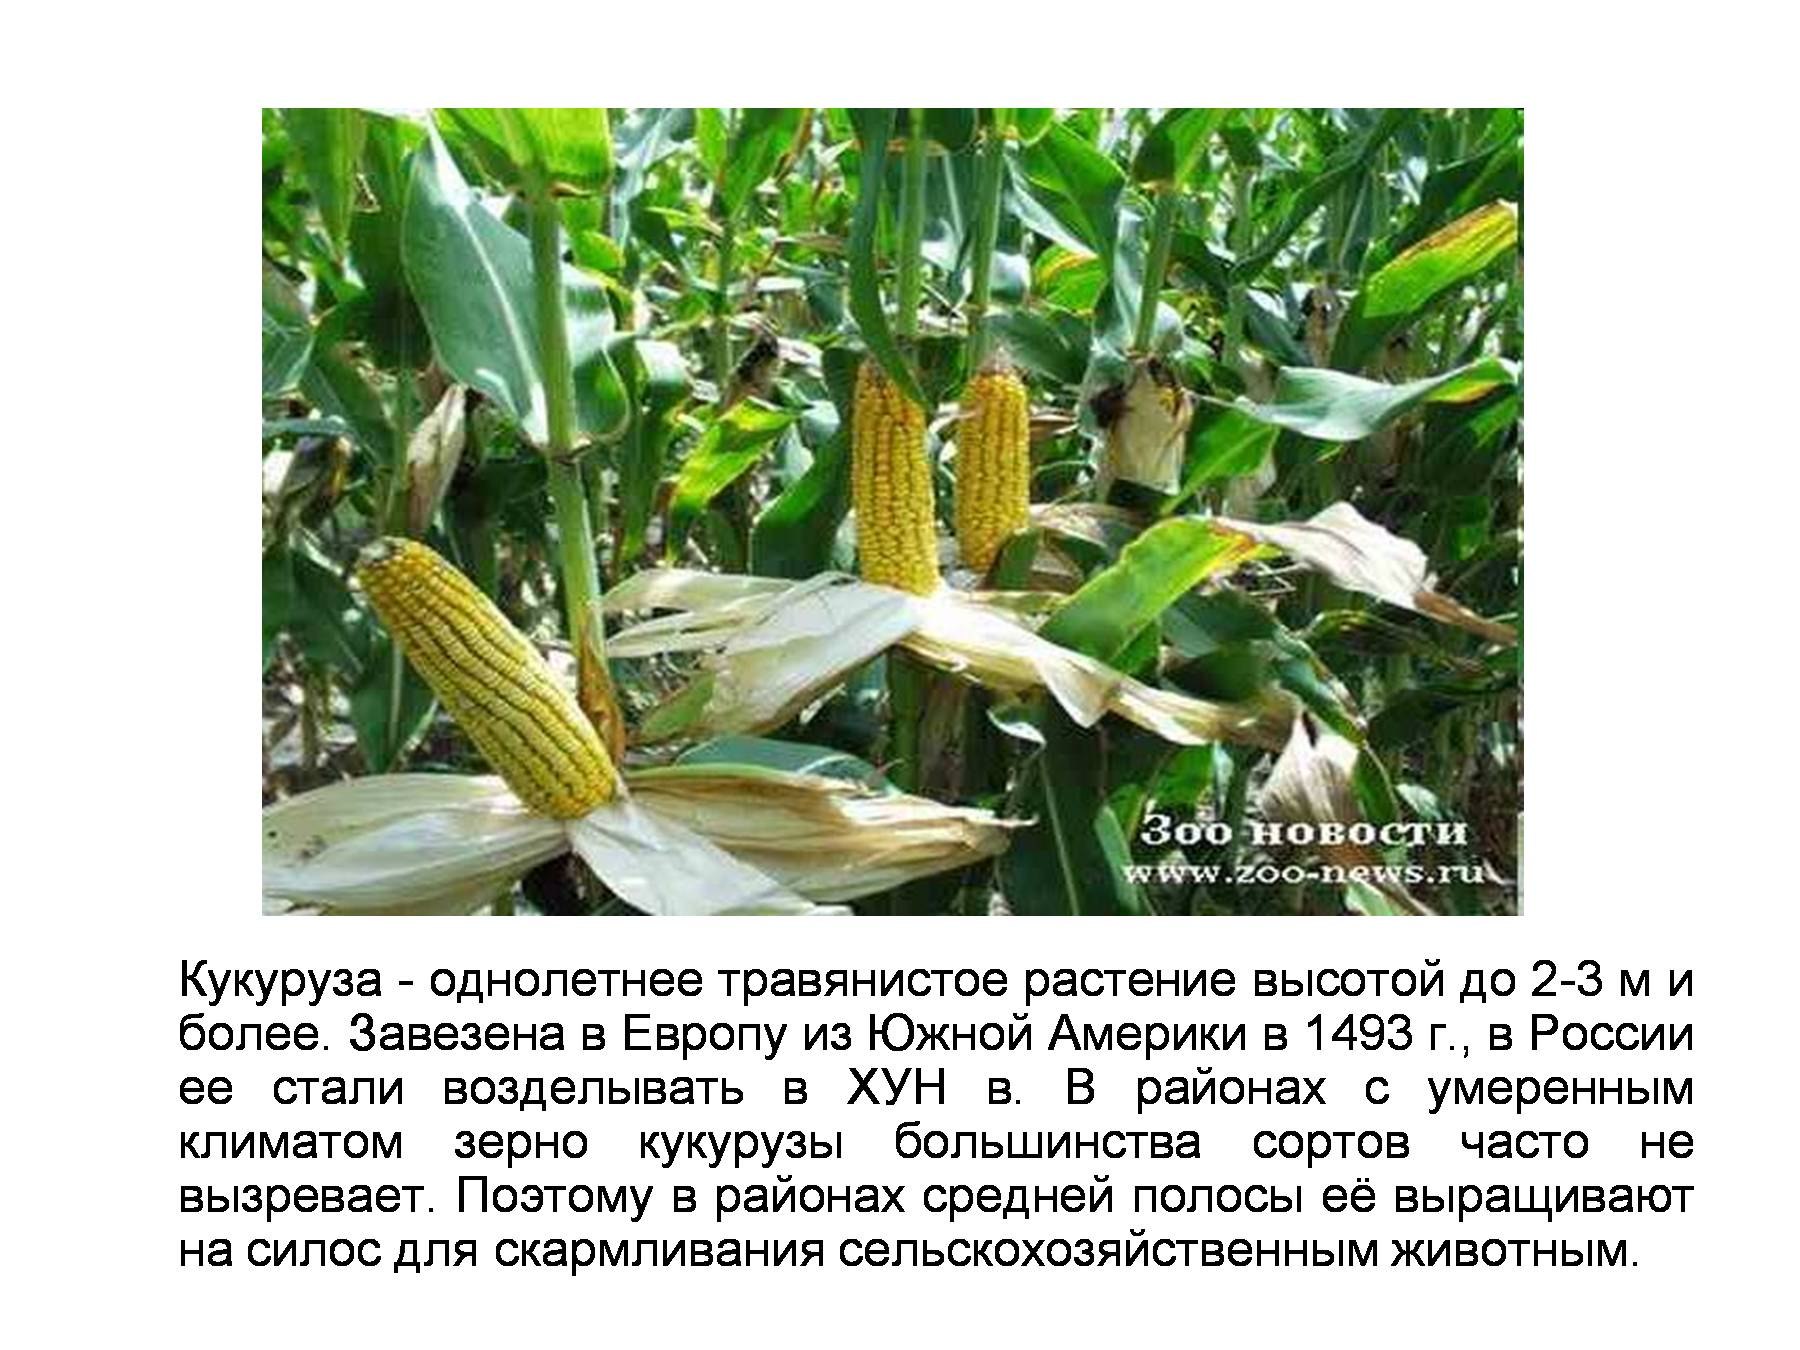 Какие культурные растения завезены. Культурное растение привезенное в Россию. Растения которые были завезены из Америки в Европу. Кукуруза презентация. Растения привезённые из Южной Америки.